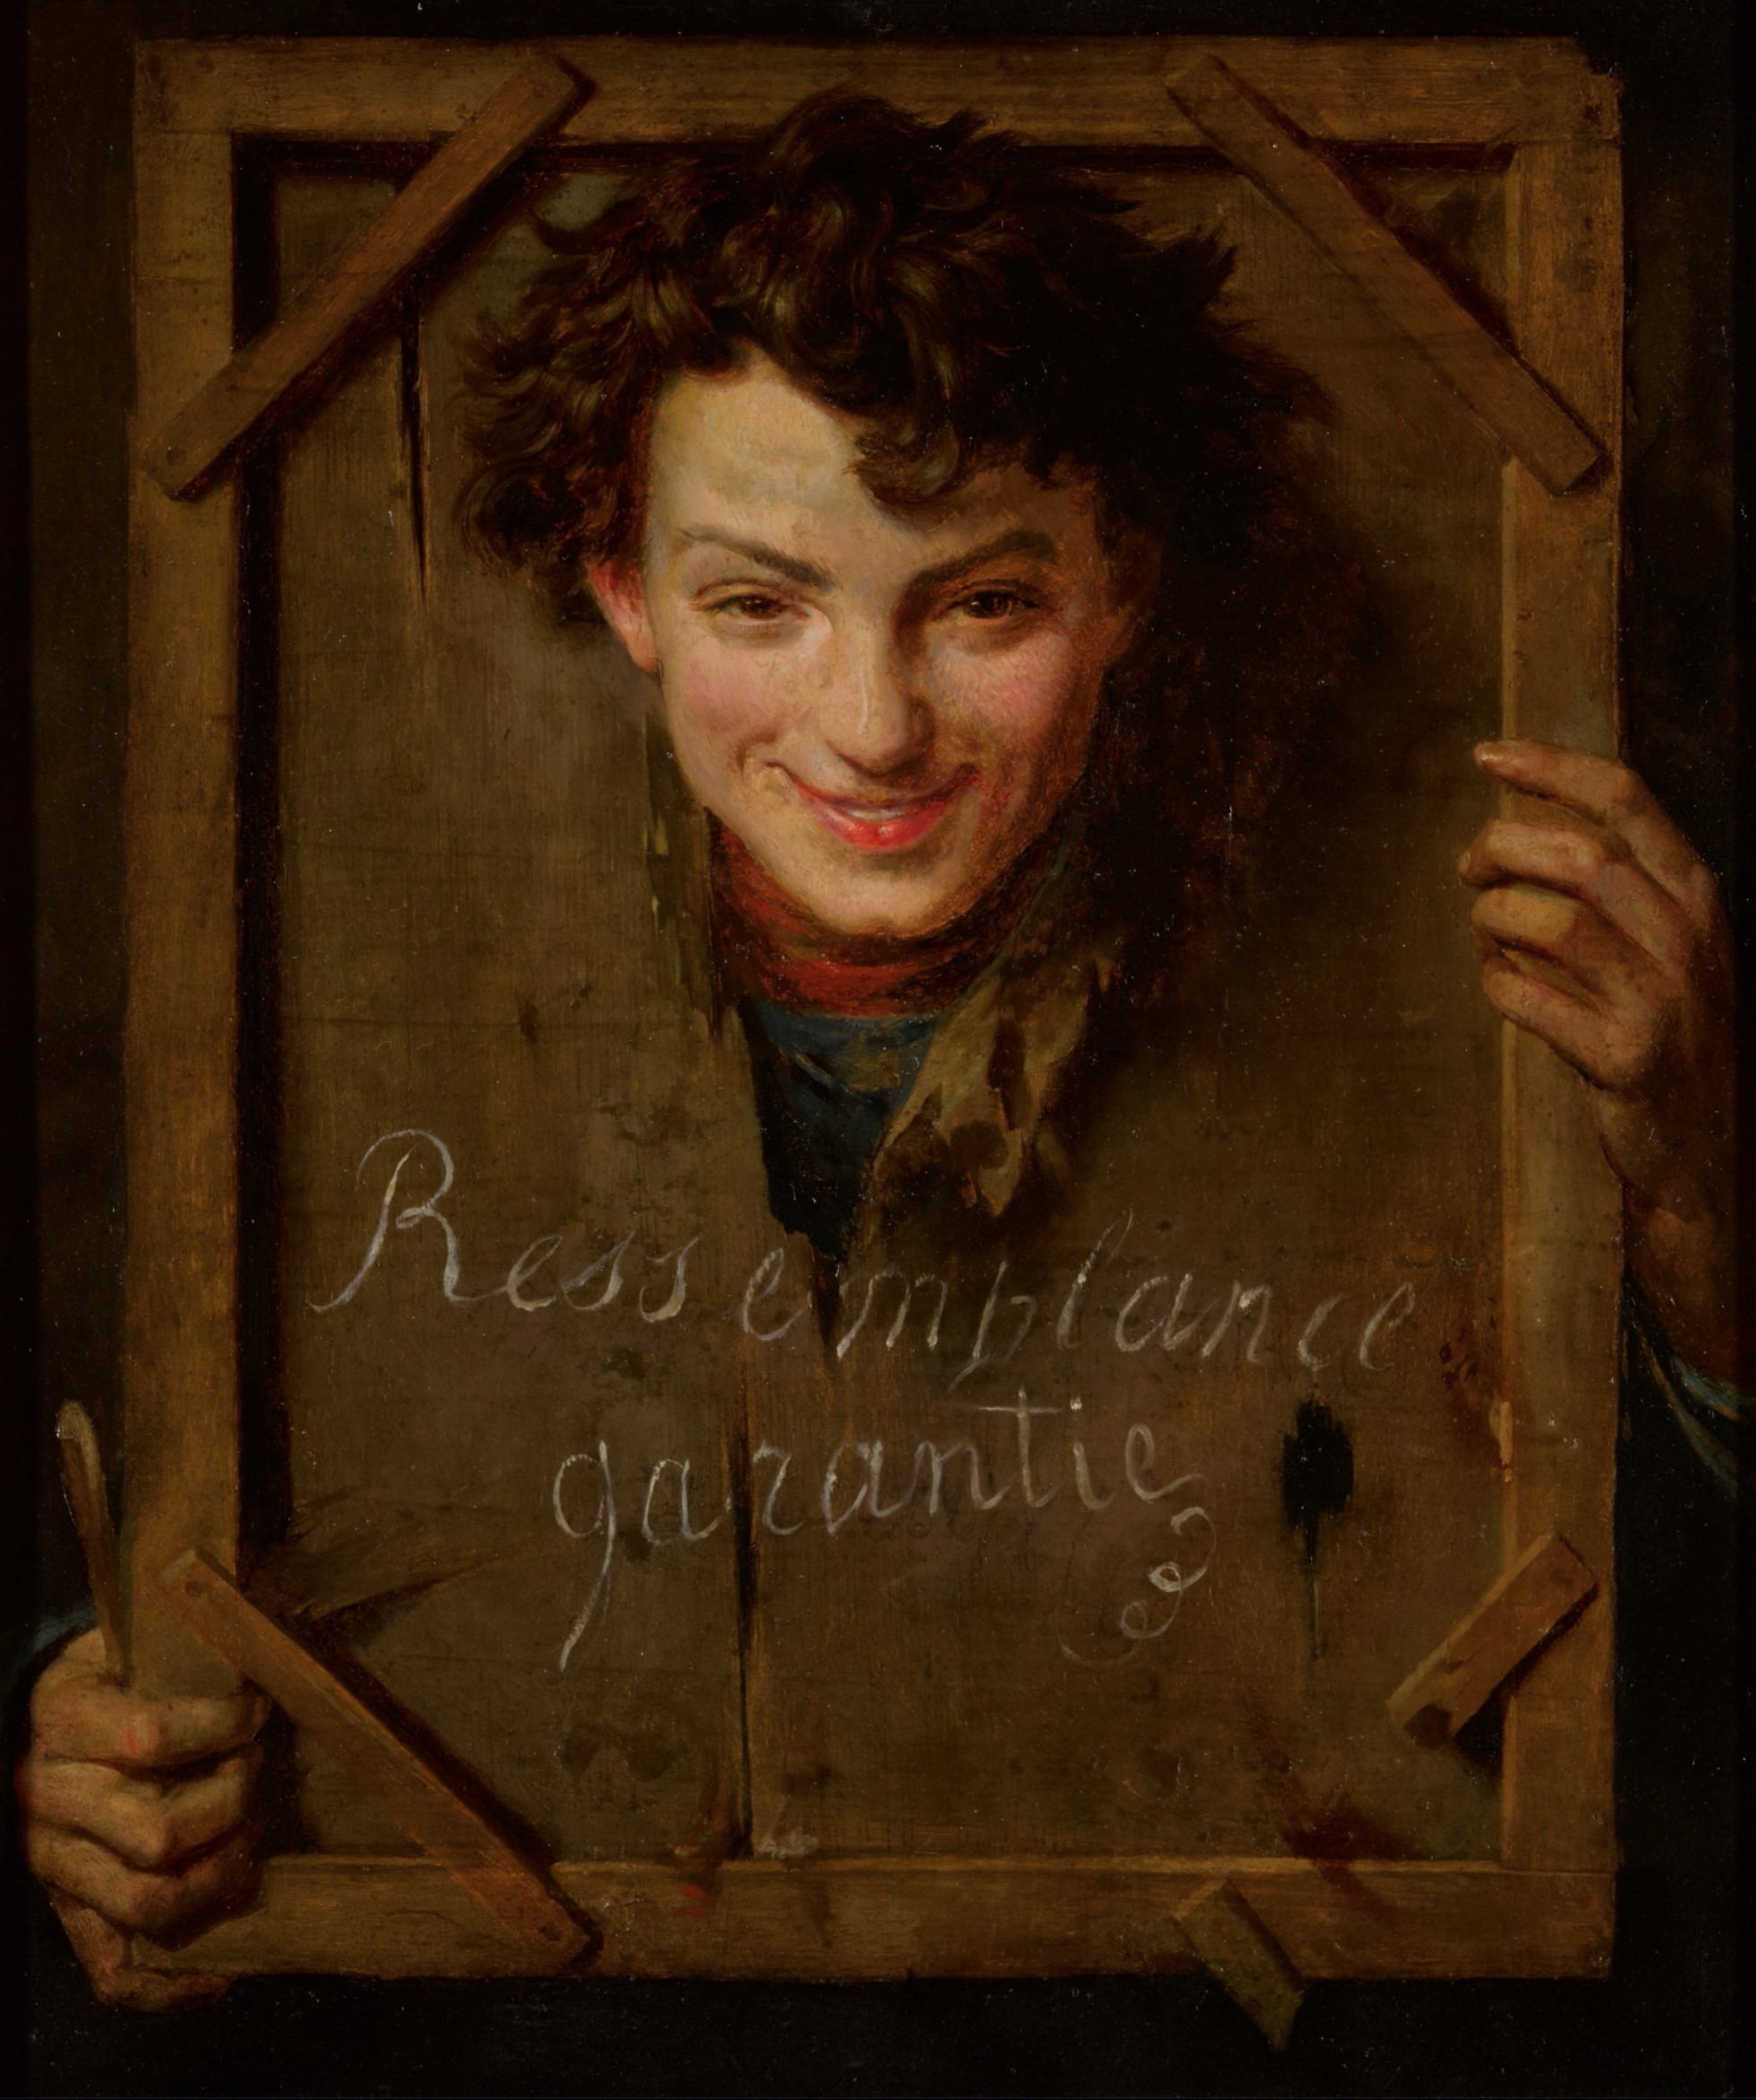 Henri-Guillaume Schlesinger (1814-1893), Ressemblance garantie, 1853. Huile sur panneau, 65 x 54,9 cm. Dickinson, Londres.